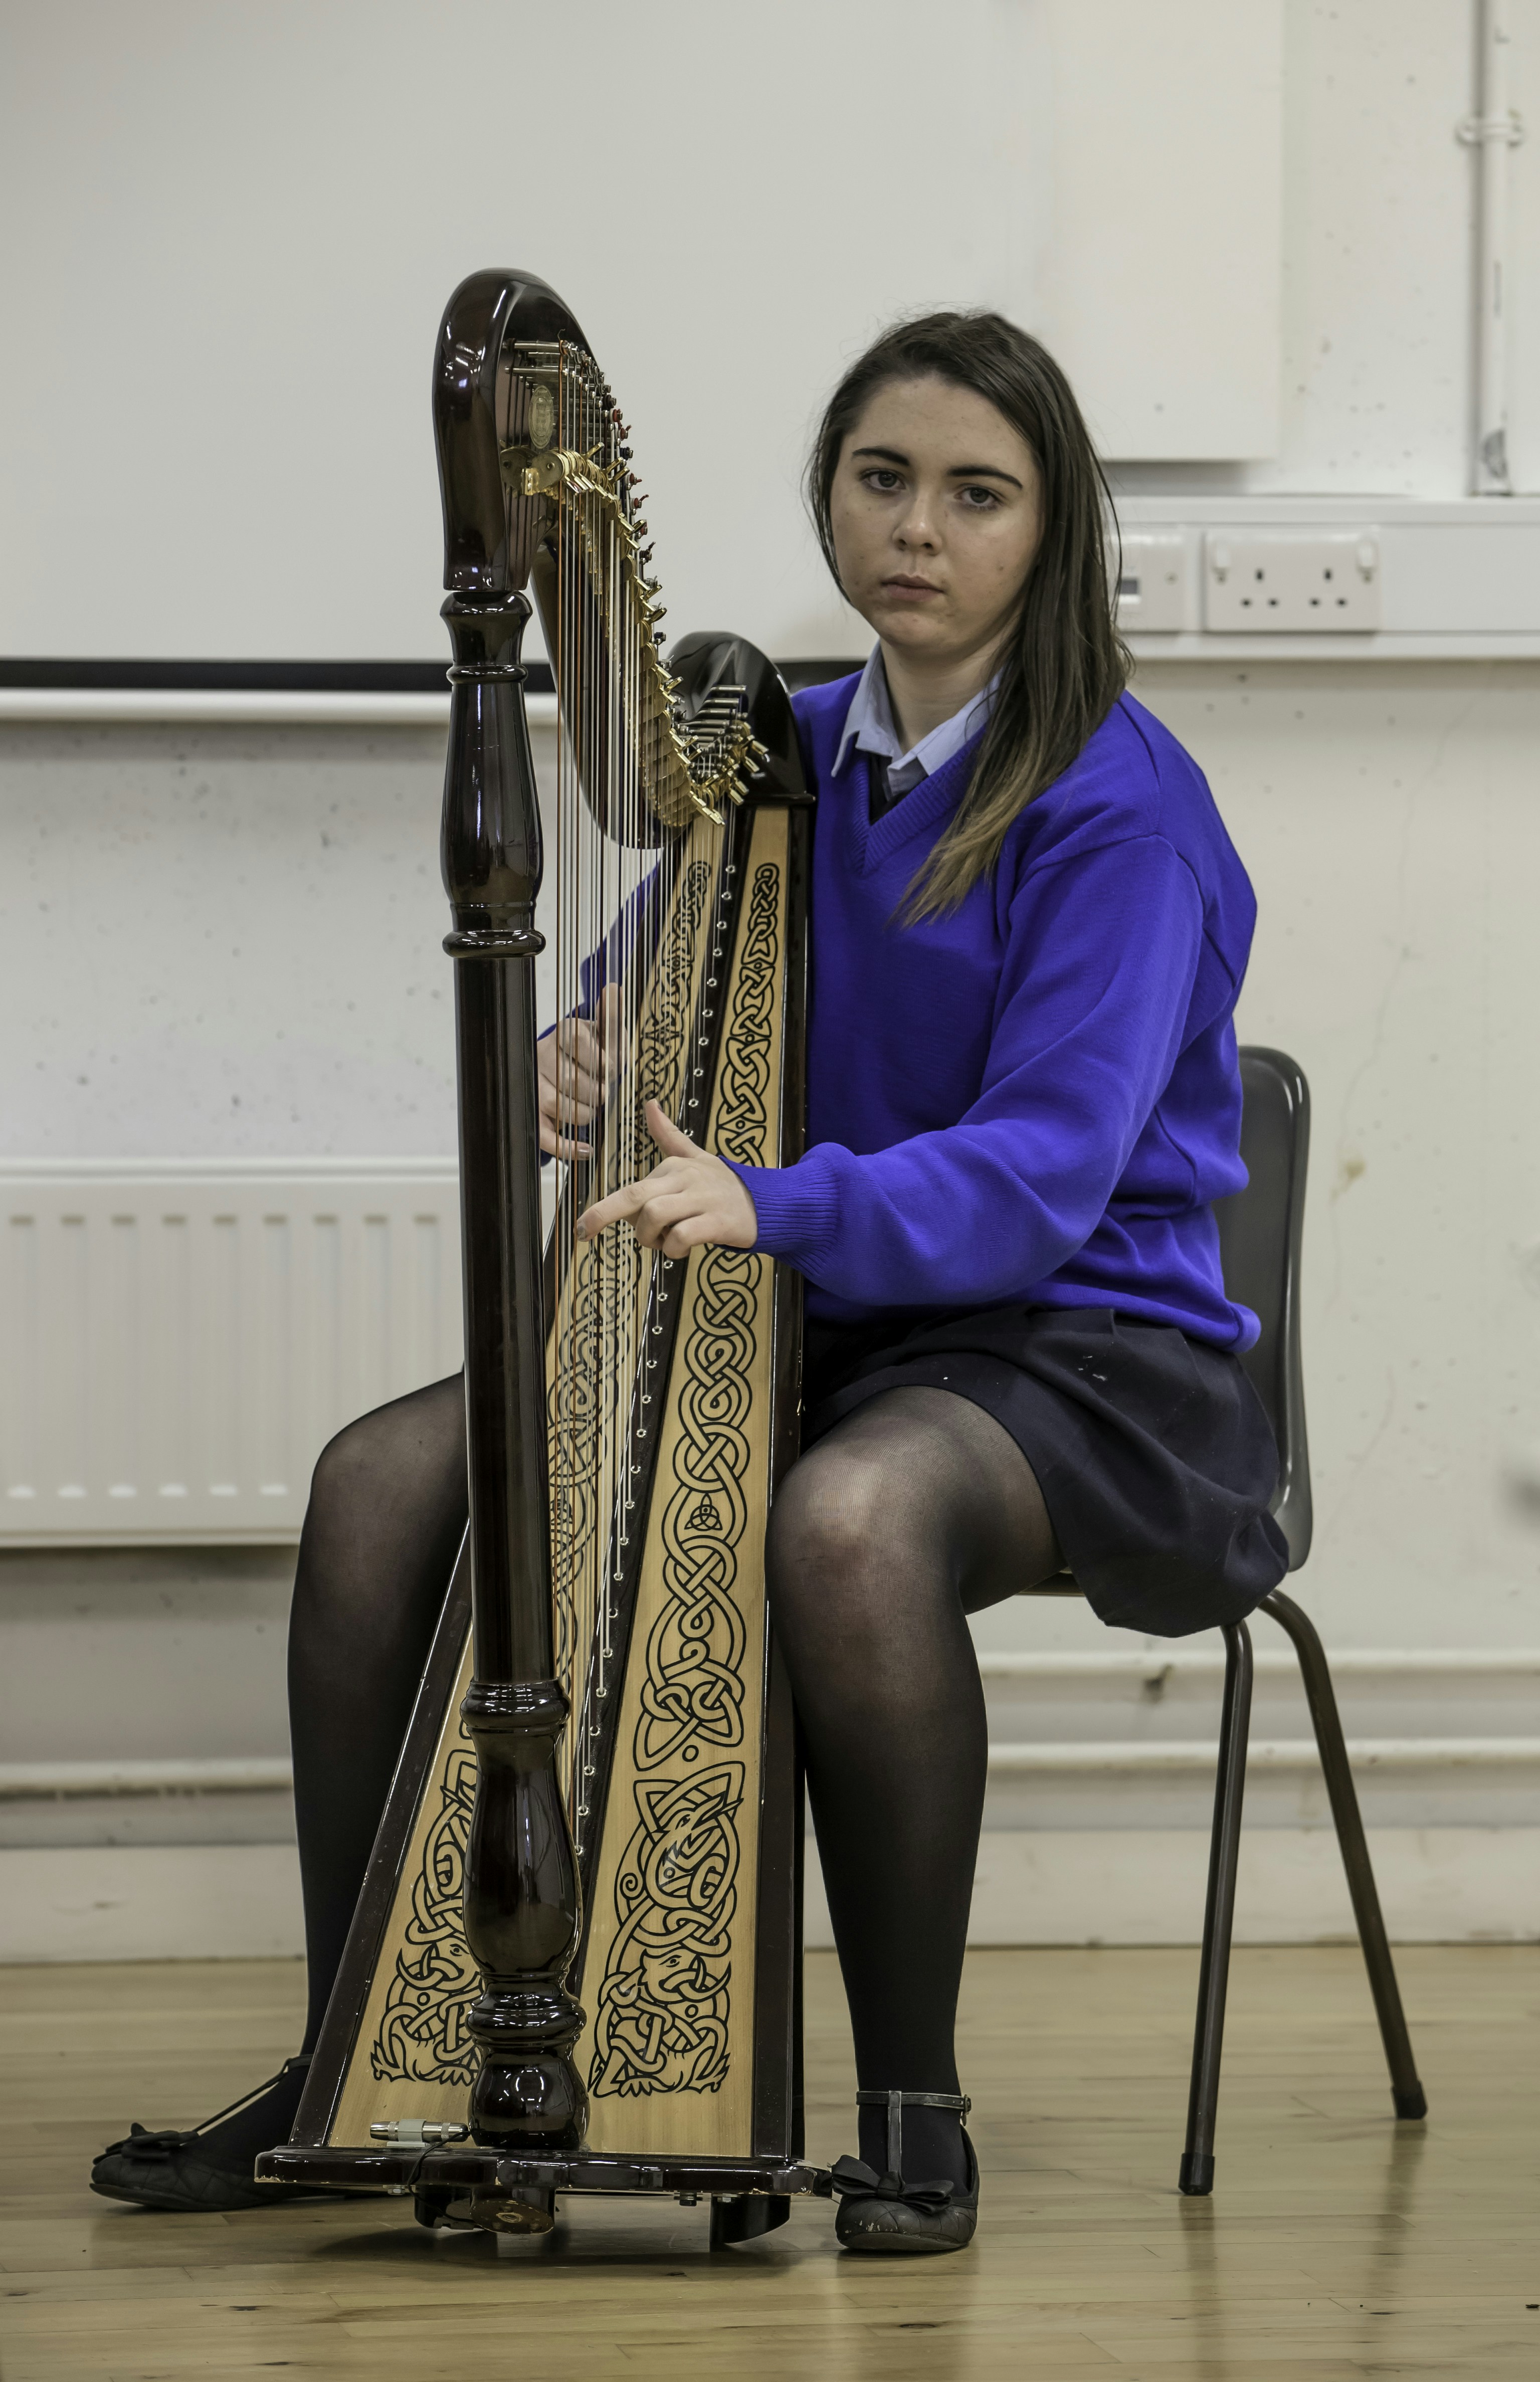 Young woman playing an Irish harp.